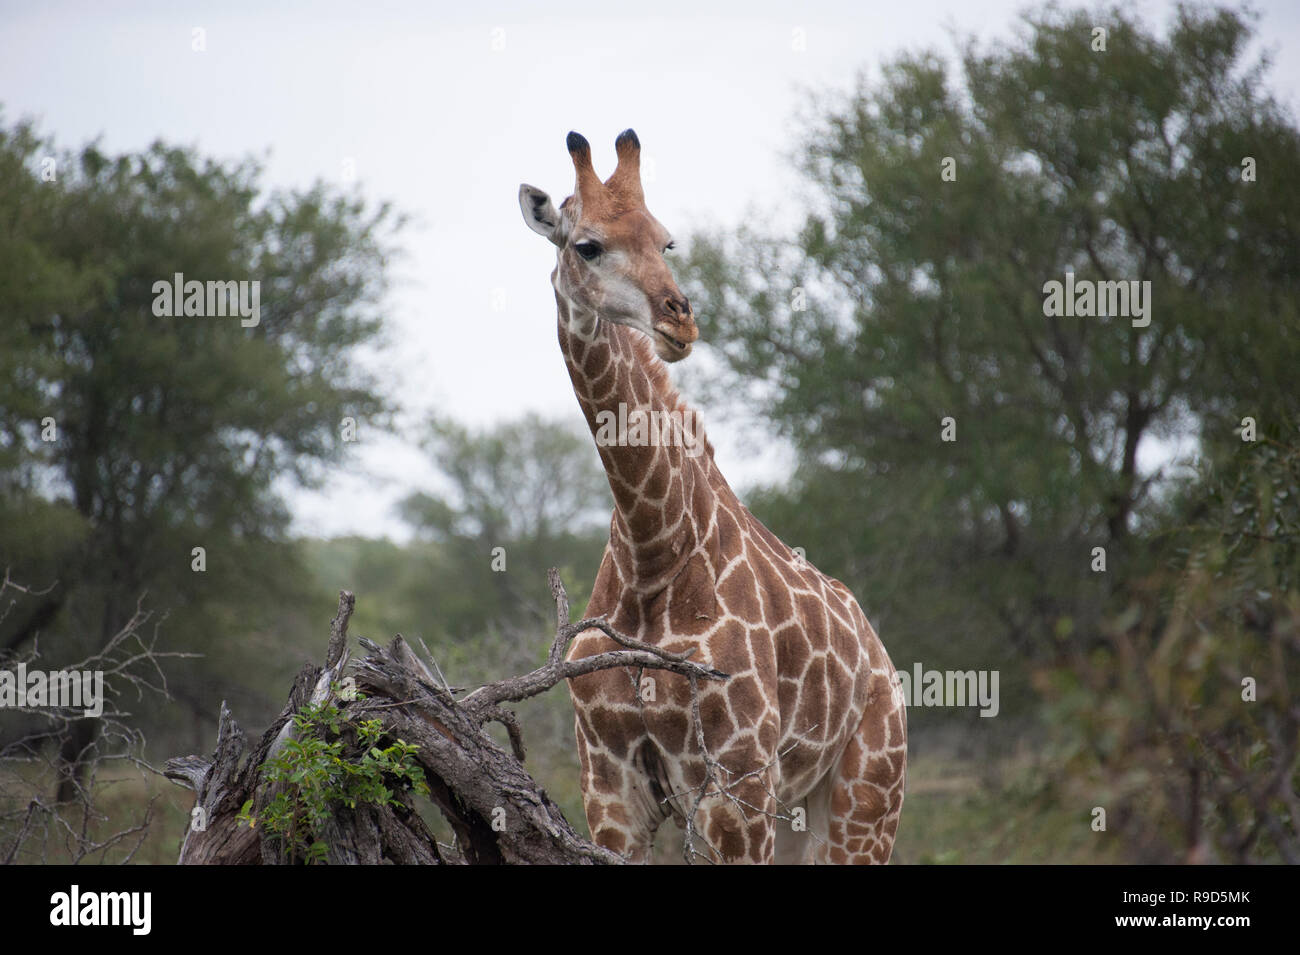 La giraffe​ está comiendo hojas, Parque Nacional Kruger, en Johannesburgo, Sudáfrica. Foto de stock